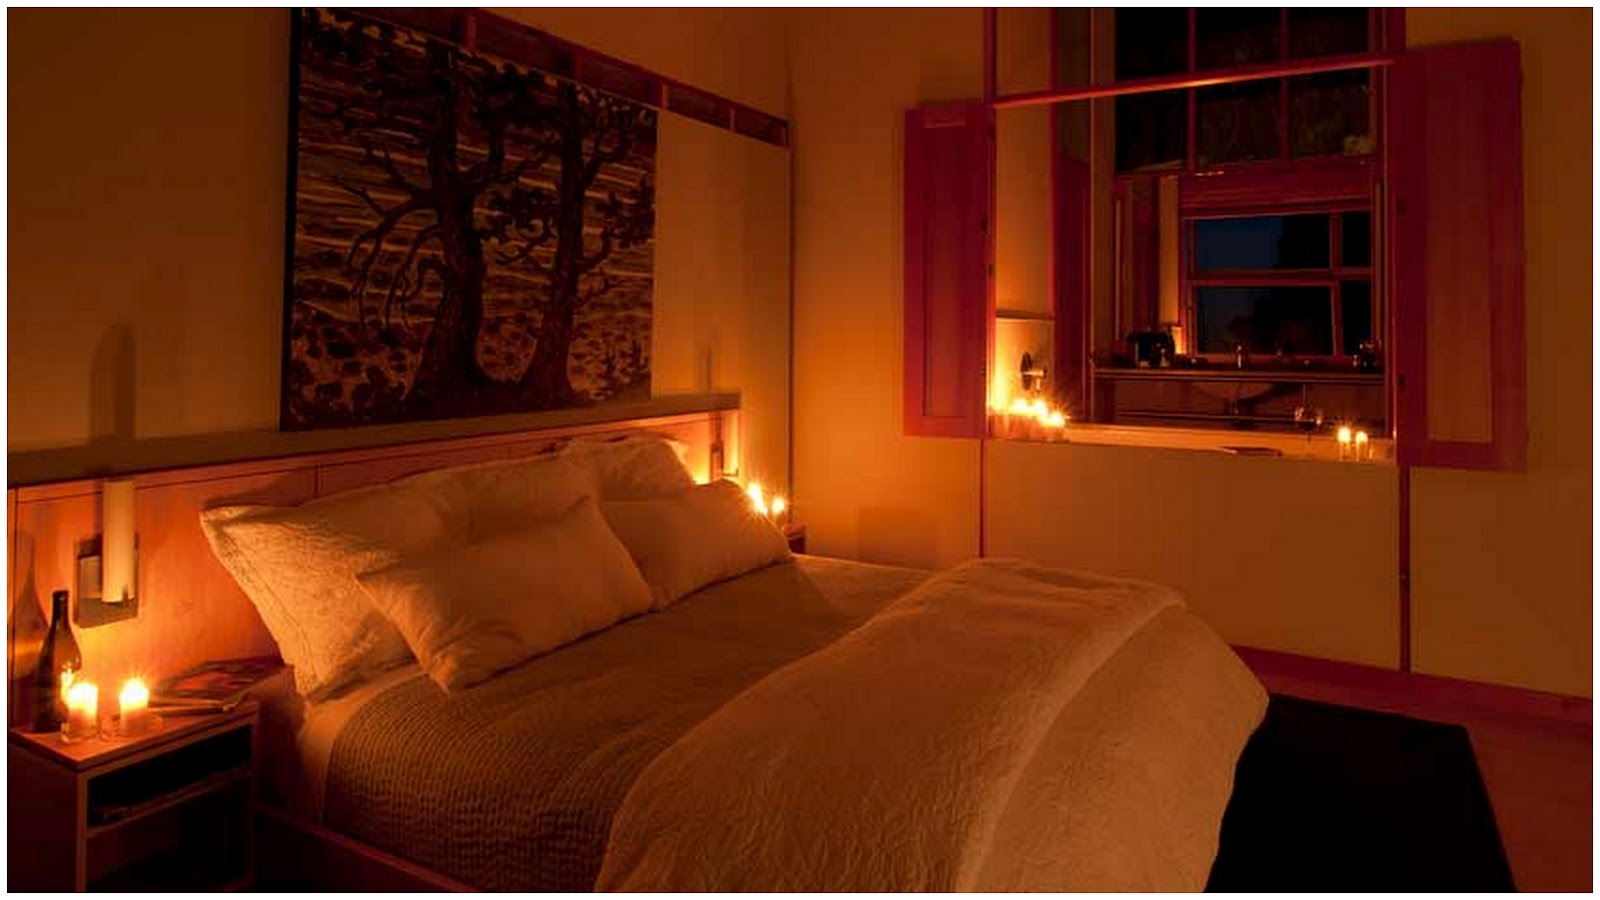 Текст вечером в комнате. Красивая комната с кроватью. Комната вечером. Уютная кровать. Приглушенный свет в спальне.